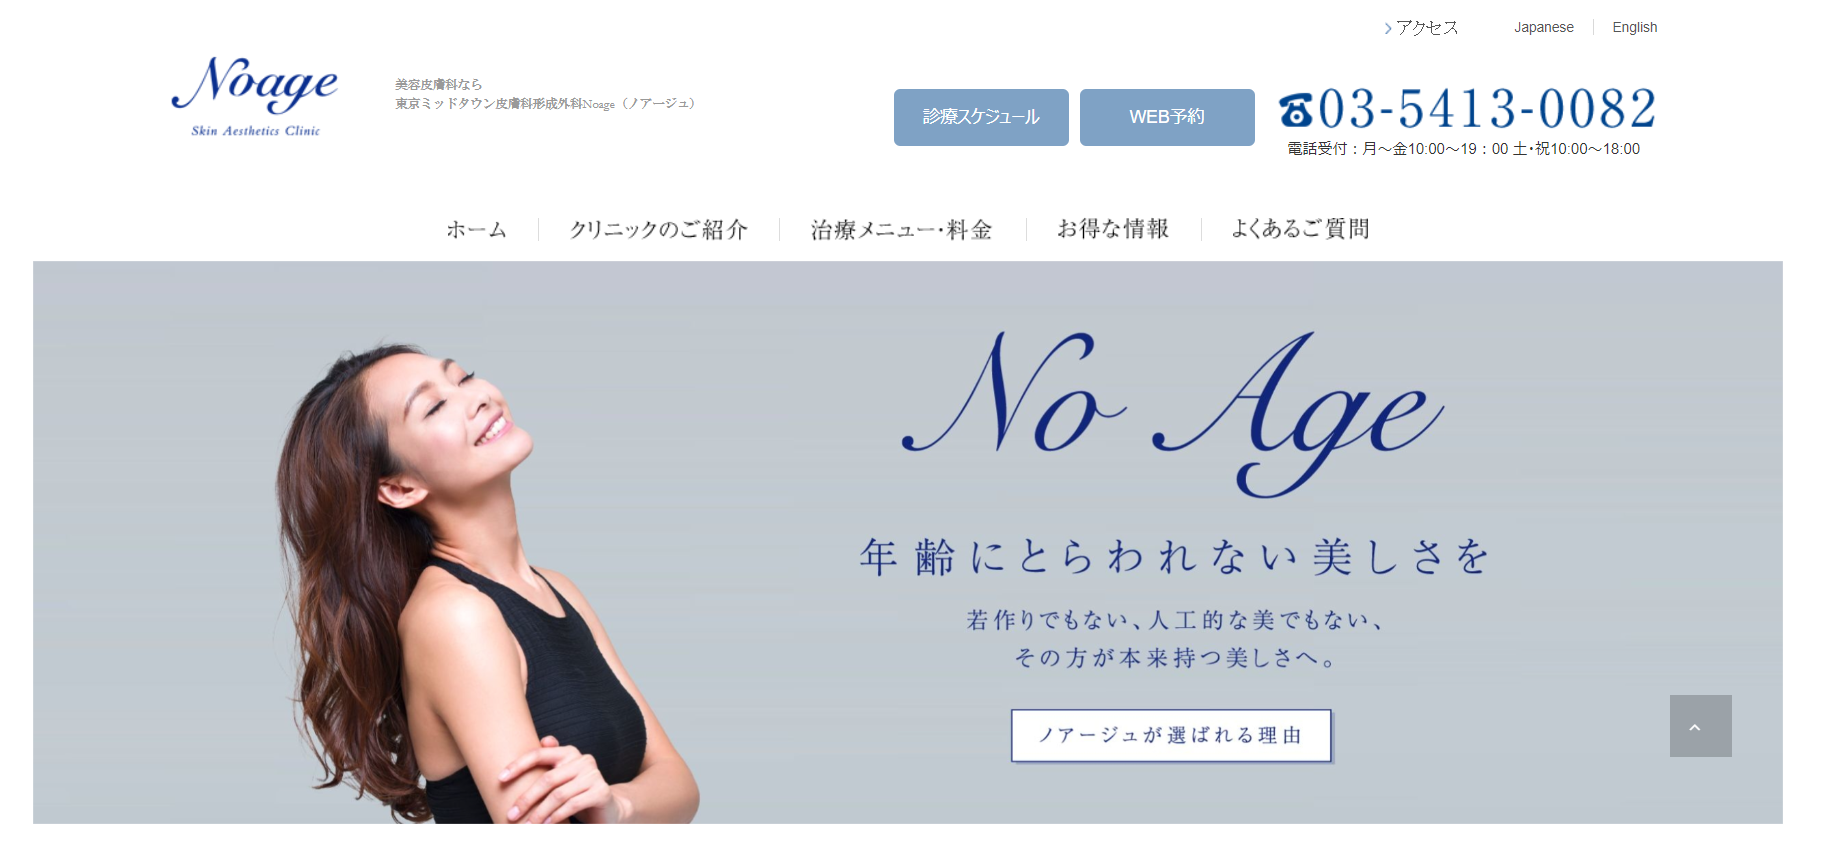 東京ミッドタウン皮膚科形成外科ノアージュの紹介画像